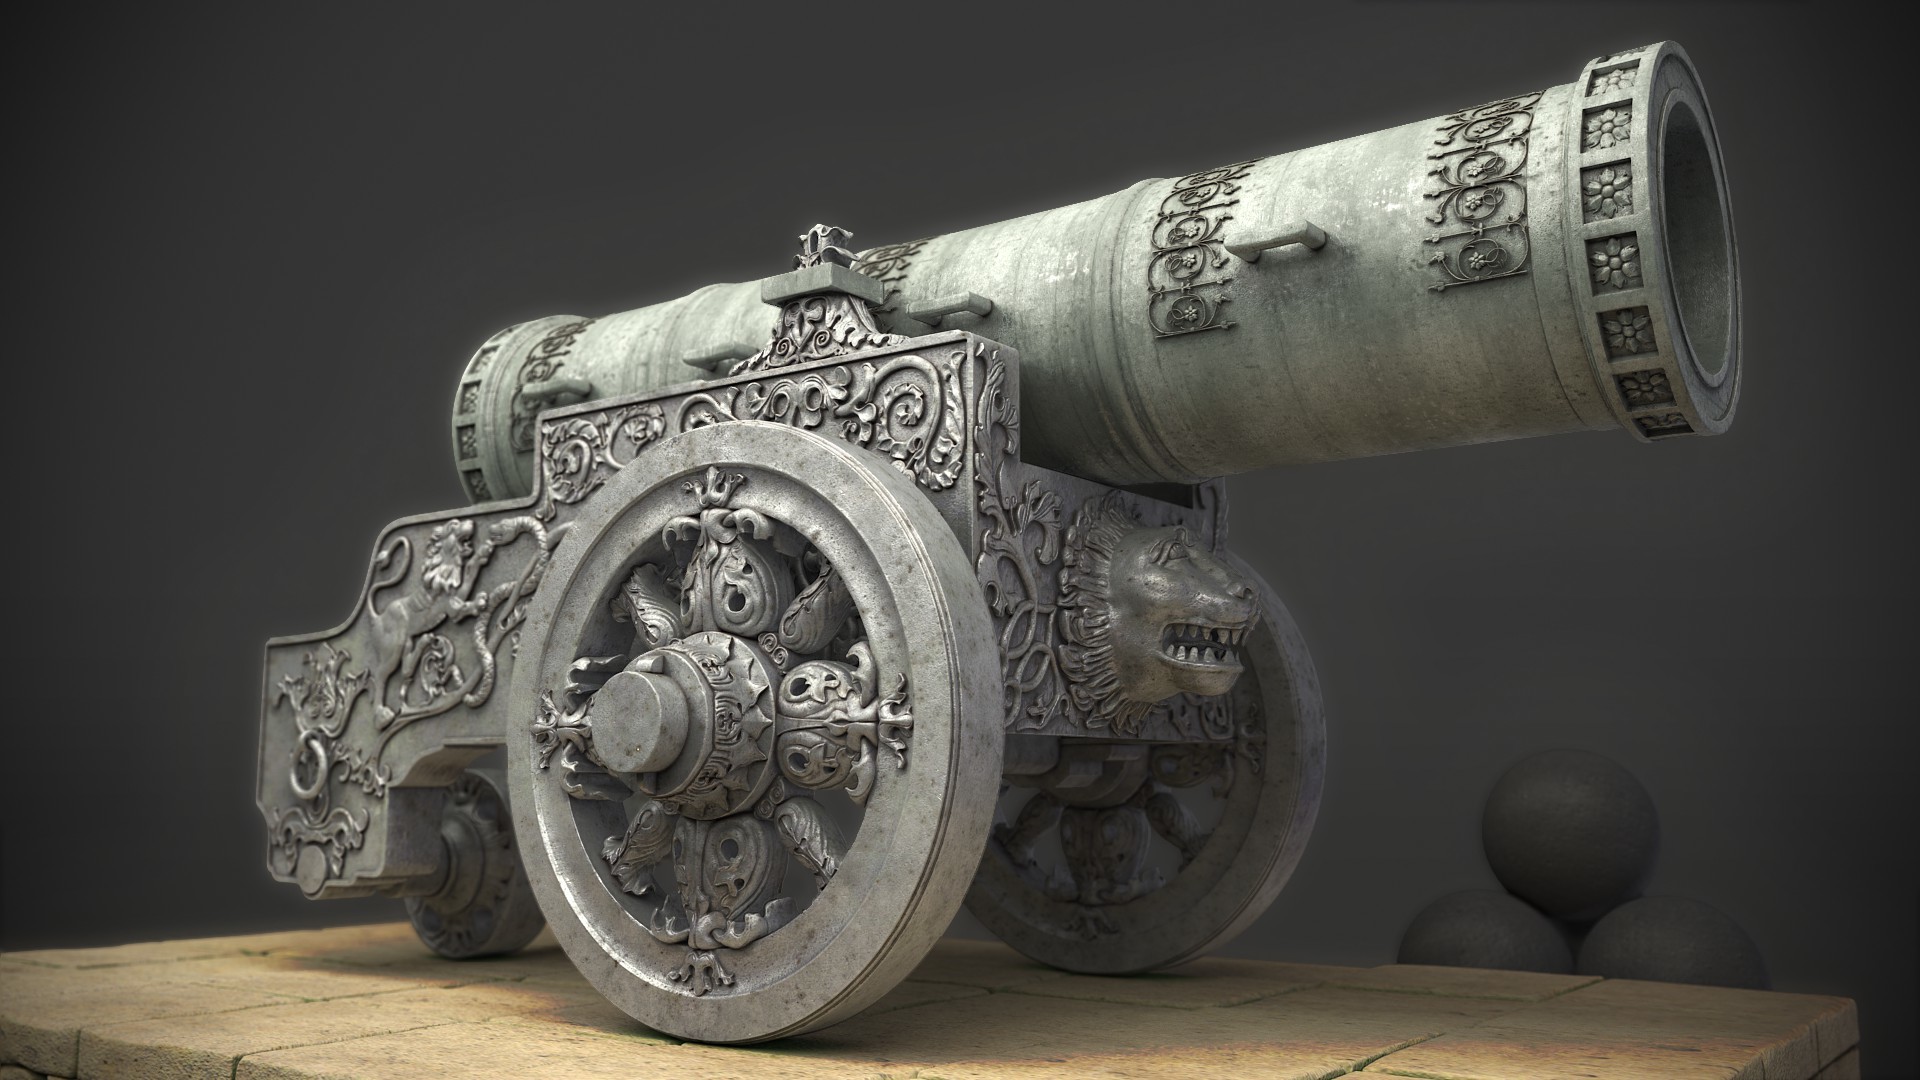 ArtStation - Tsar Cannon